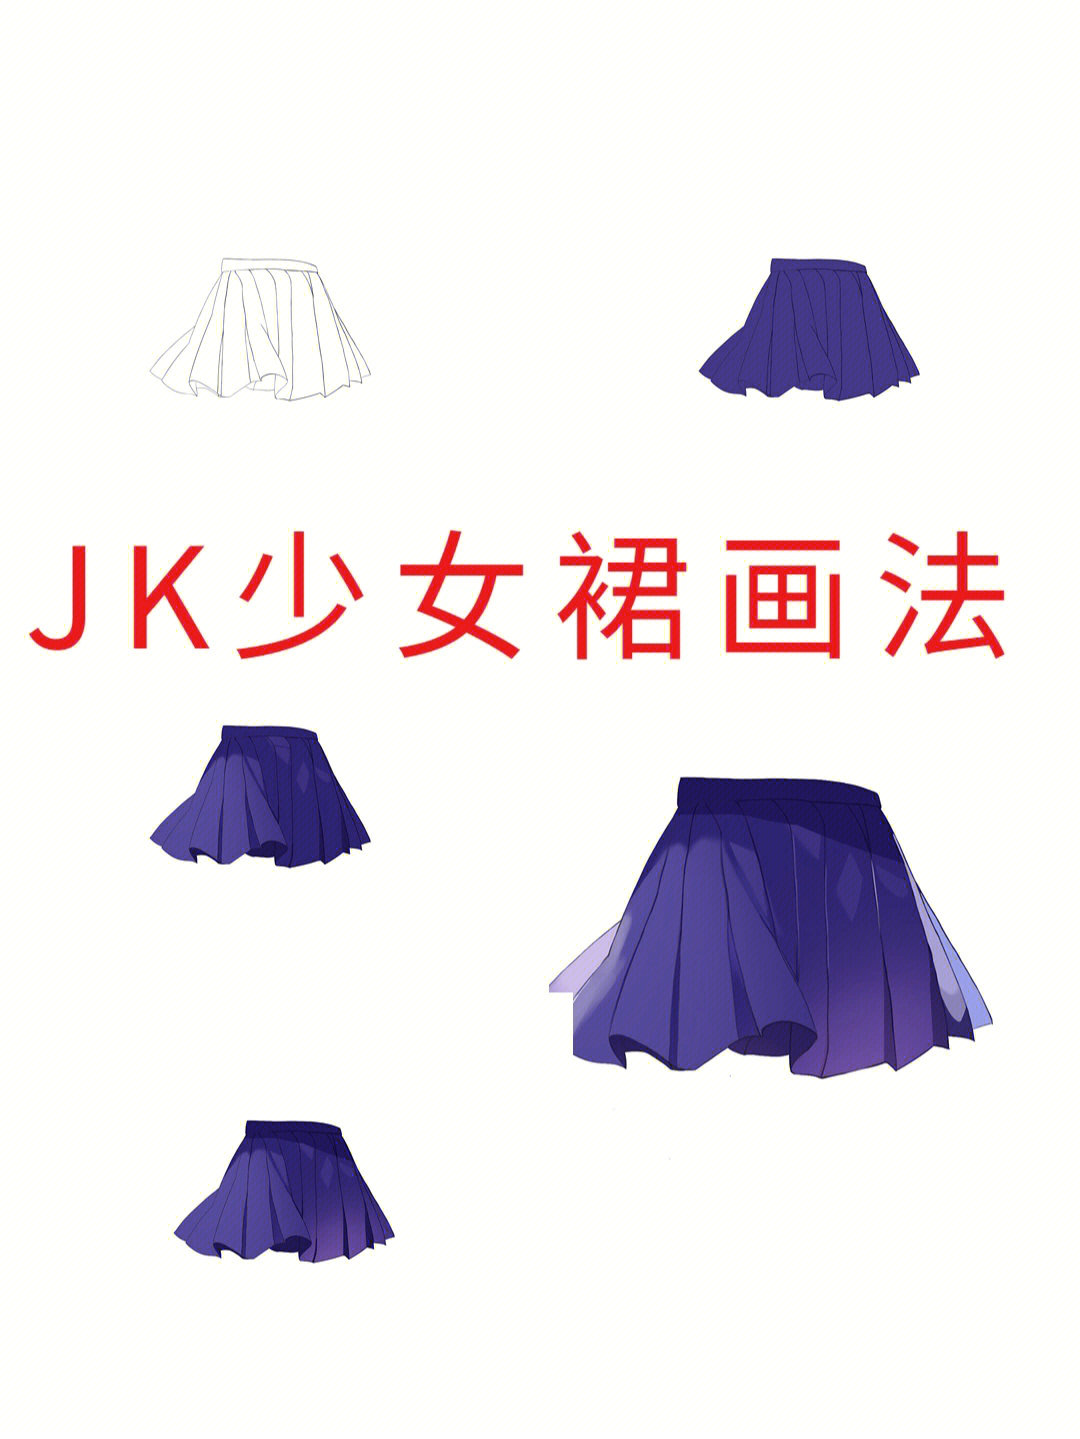 jk裙子稿子图图片